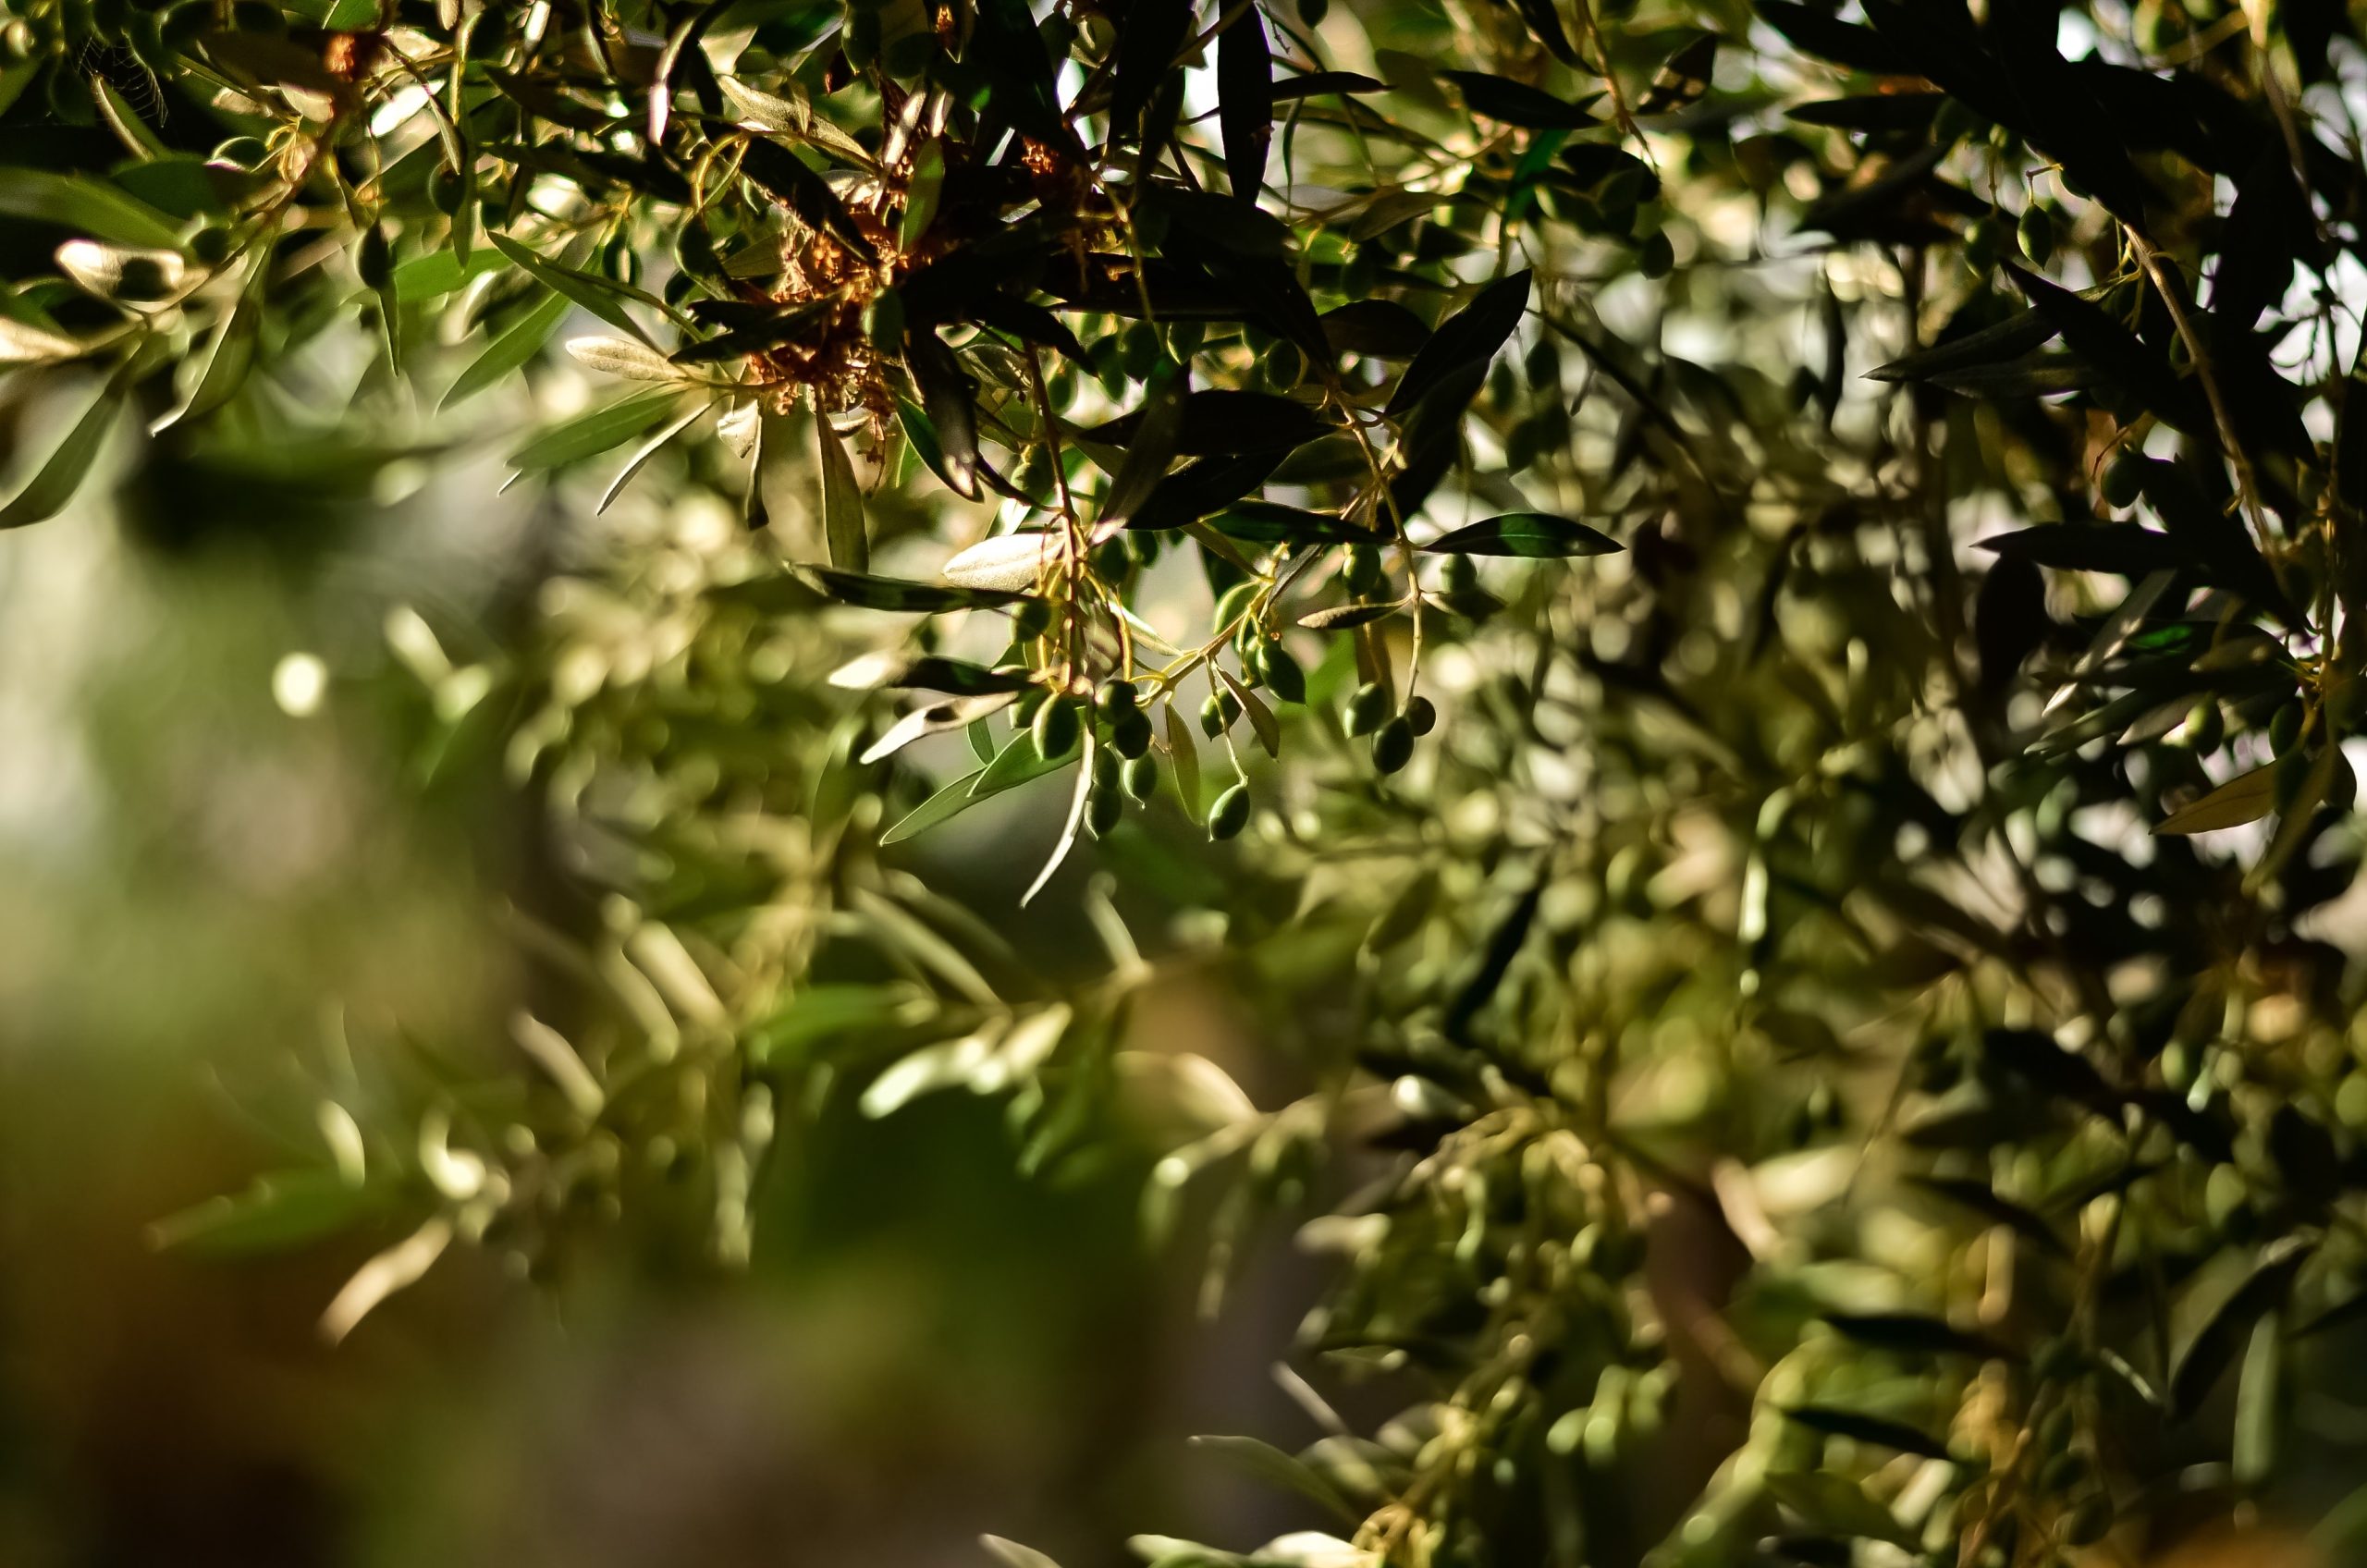 croatian olive oil, image of olive tree